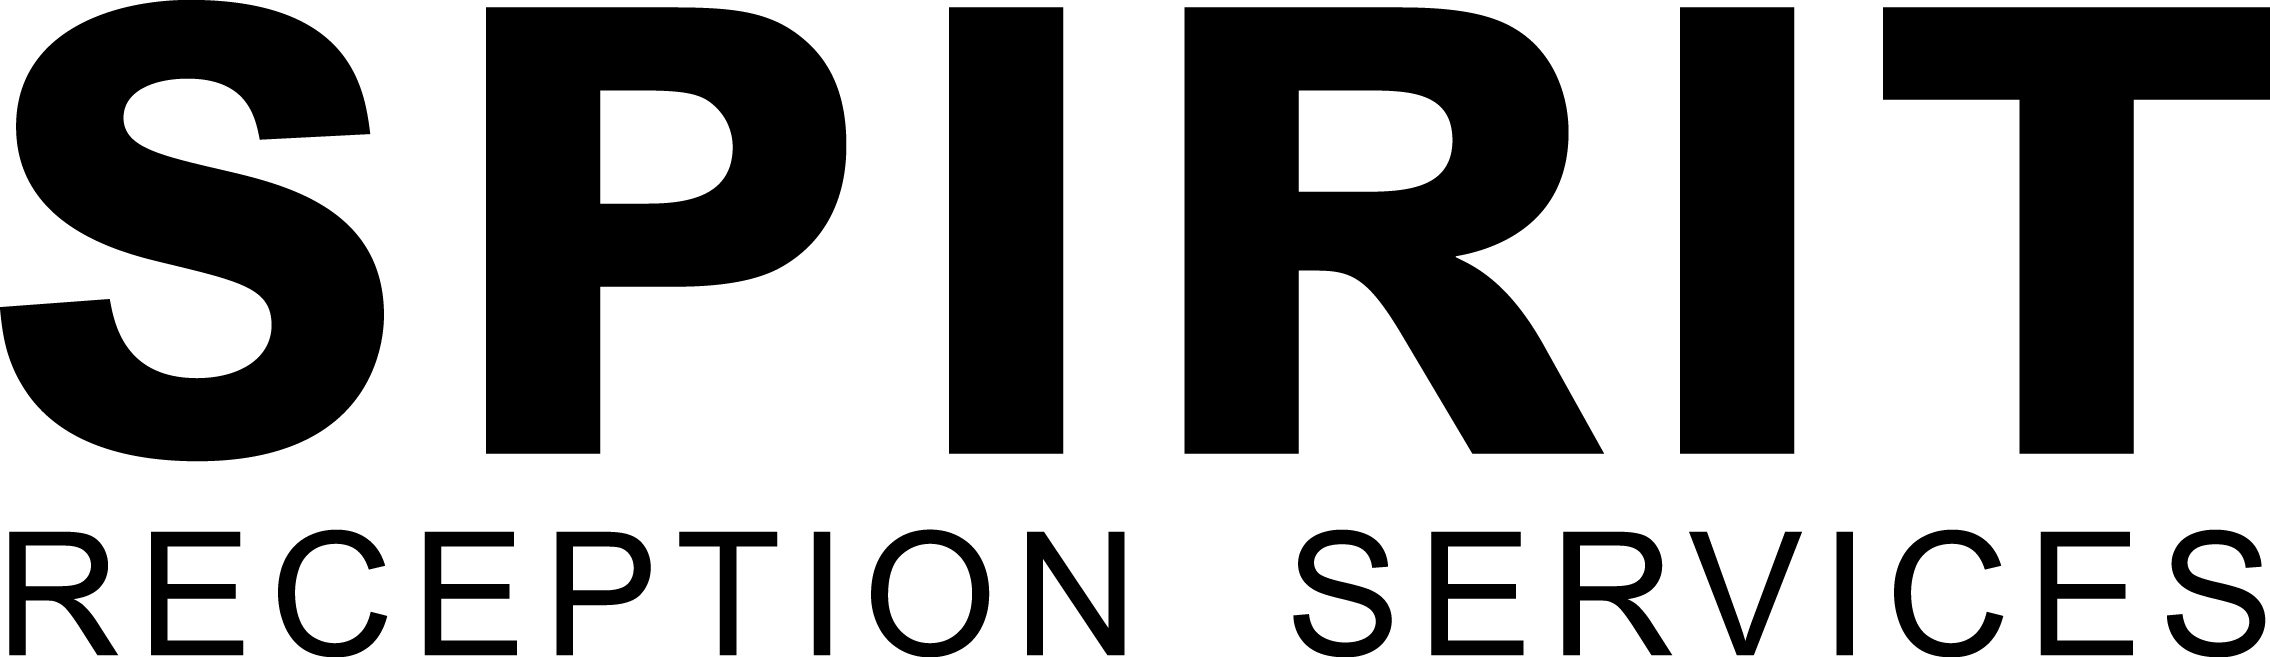 Spirit Hospitality Service logo